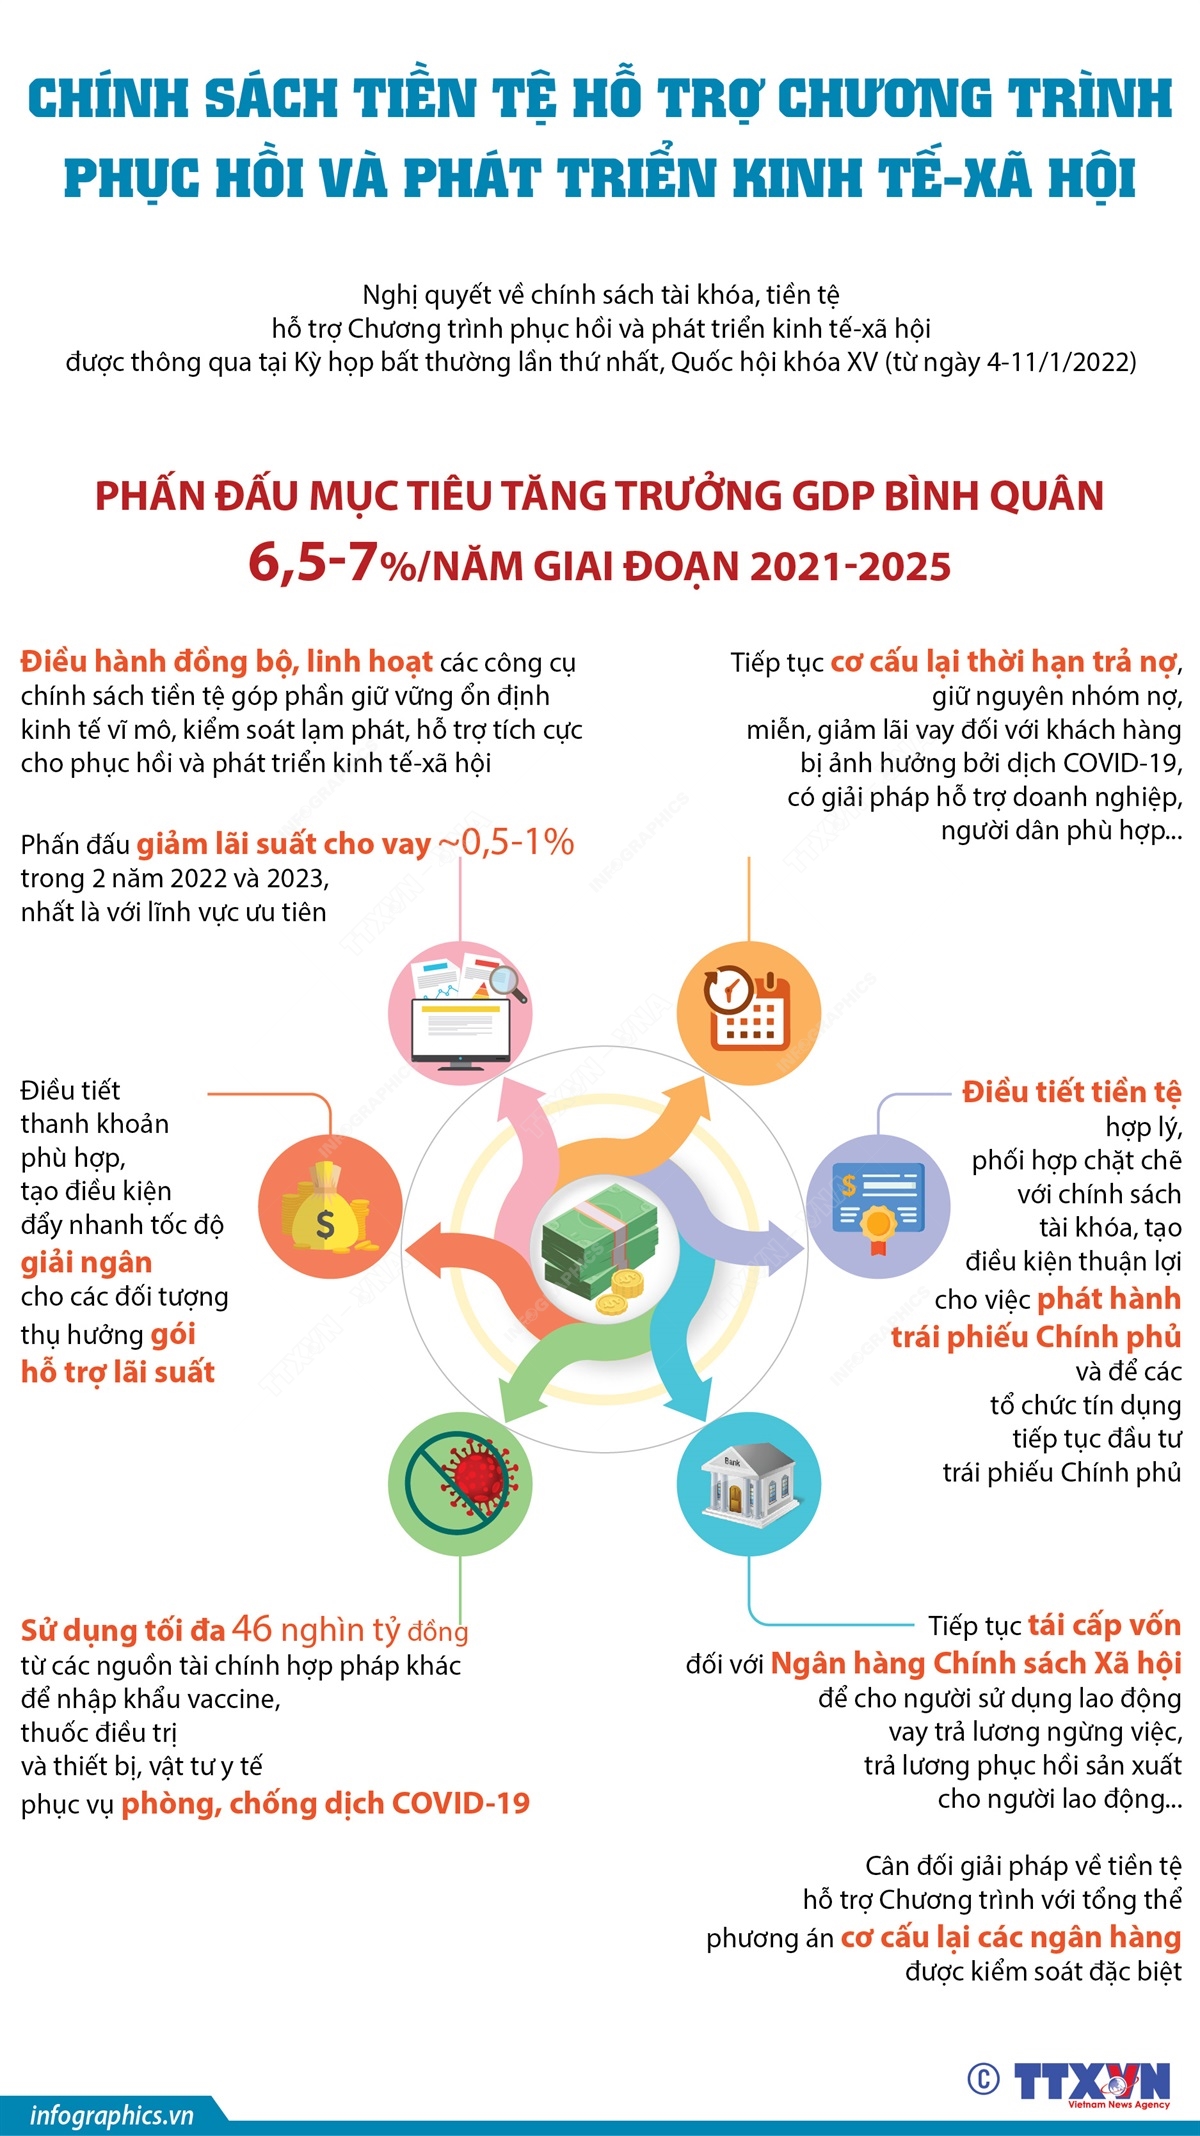 Chính sách tiền tệ: Hình ảnh Chính sách tiền tệ sẽ giúp bạn hiểu rõ hơn về các vấn đề kinh tế và tài chính của Việt Nam. Bạn sẽ được thấy tính chất của chính sách tiền tệ và hiệu quả của nó đối với nền kinh tế và đời sống của người dân.